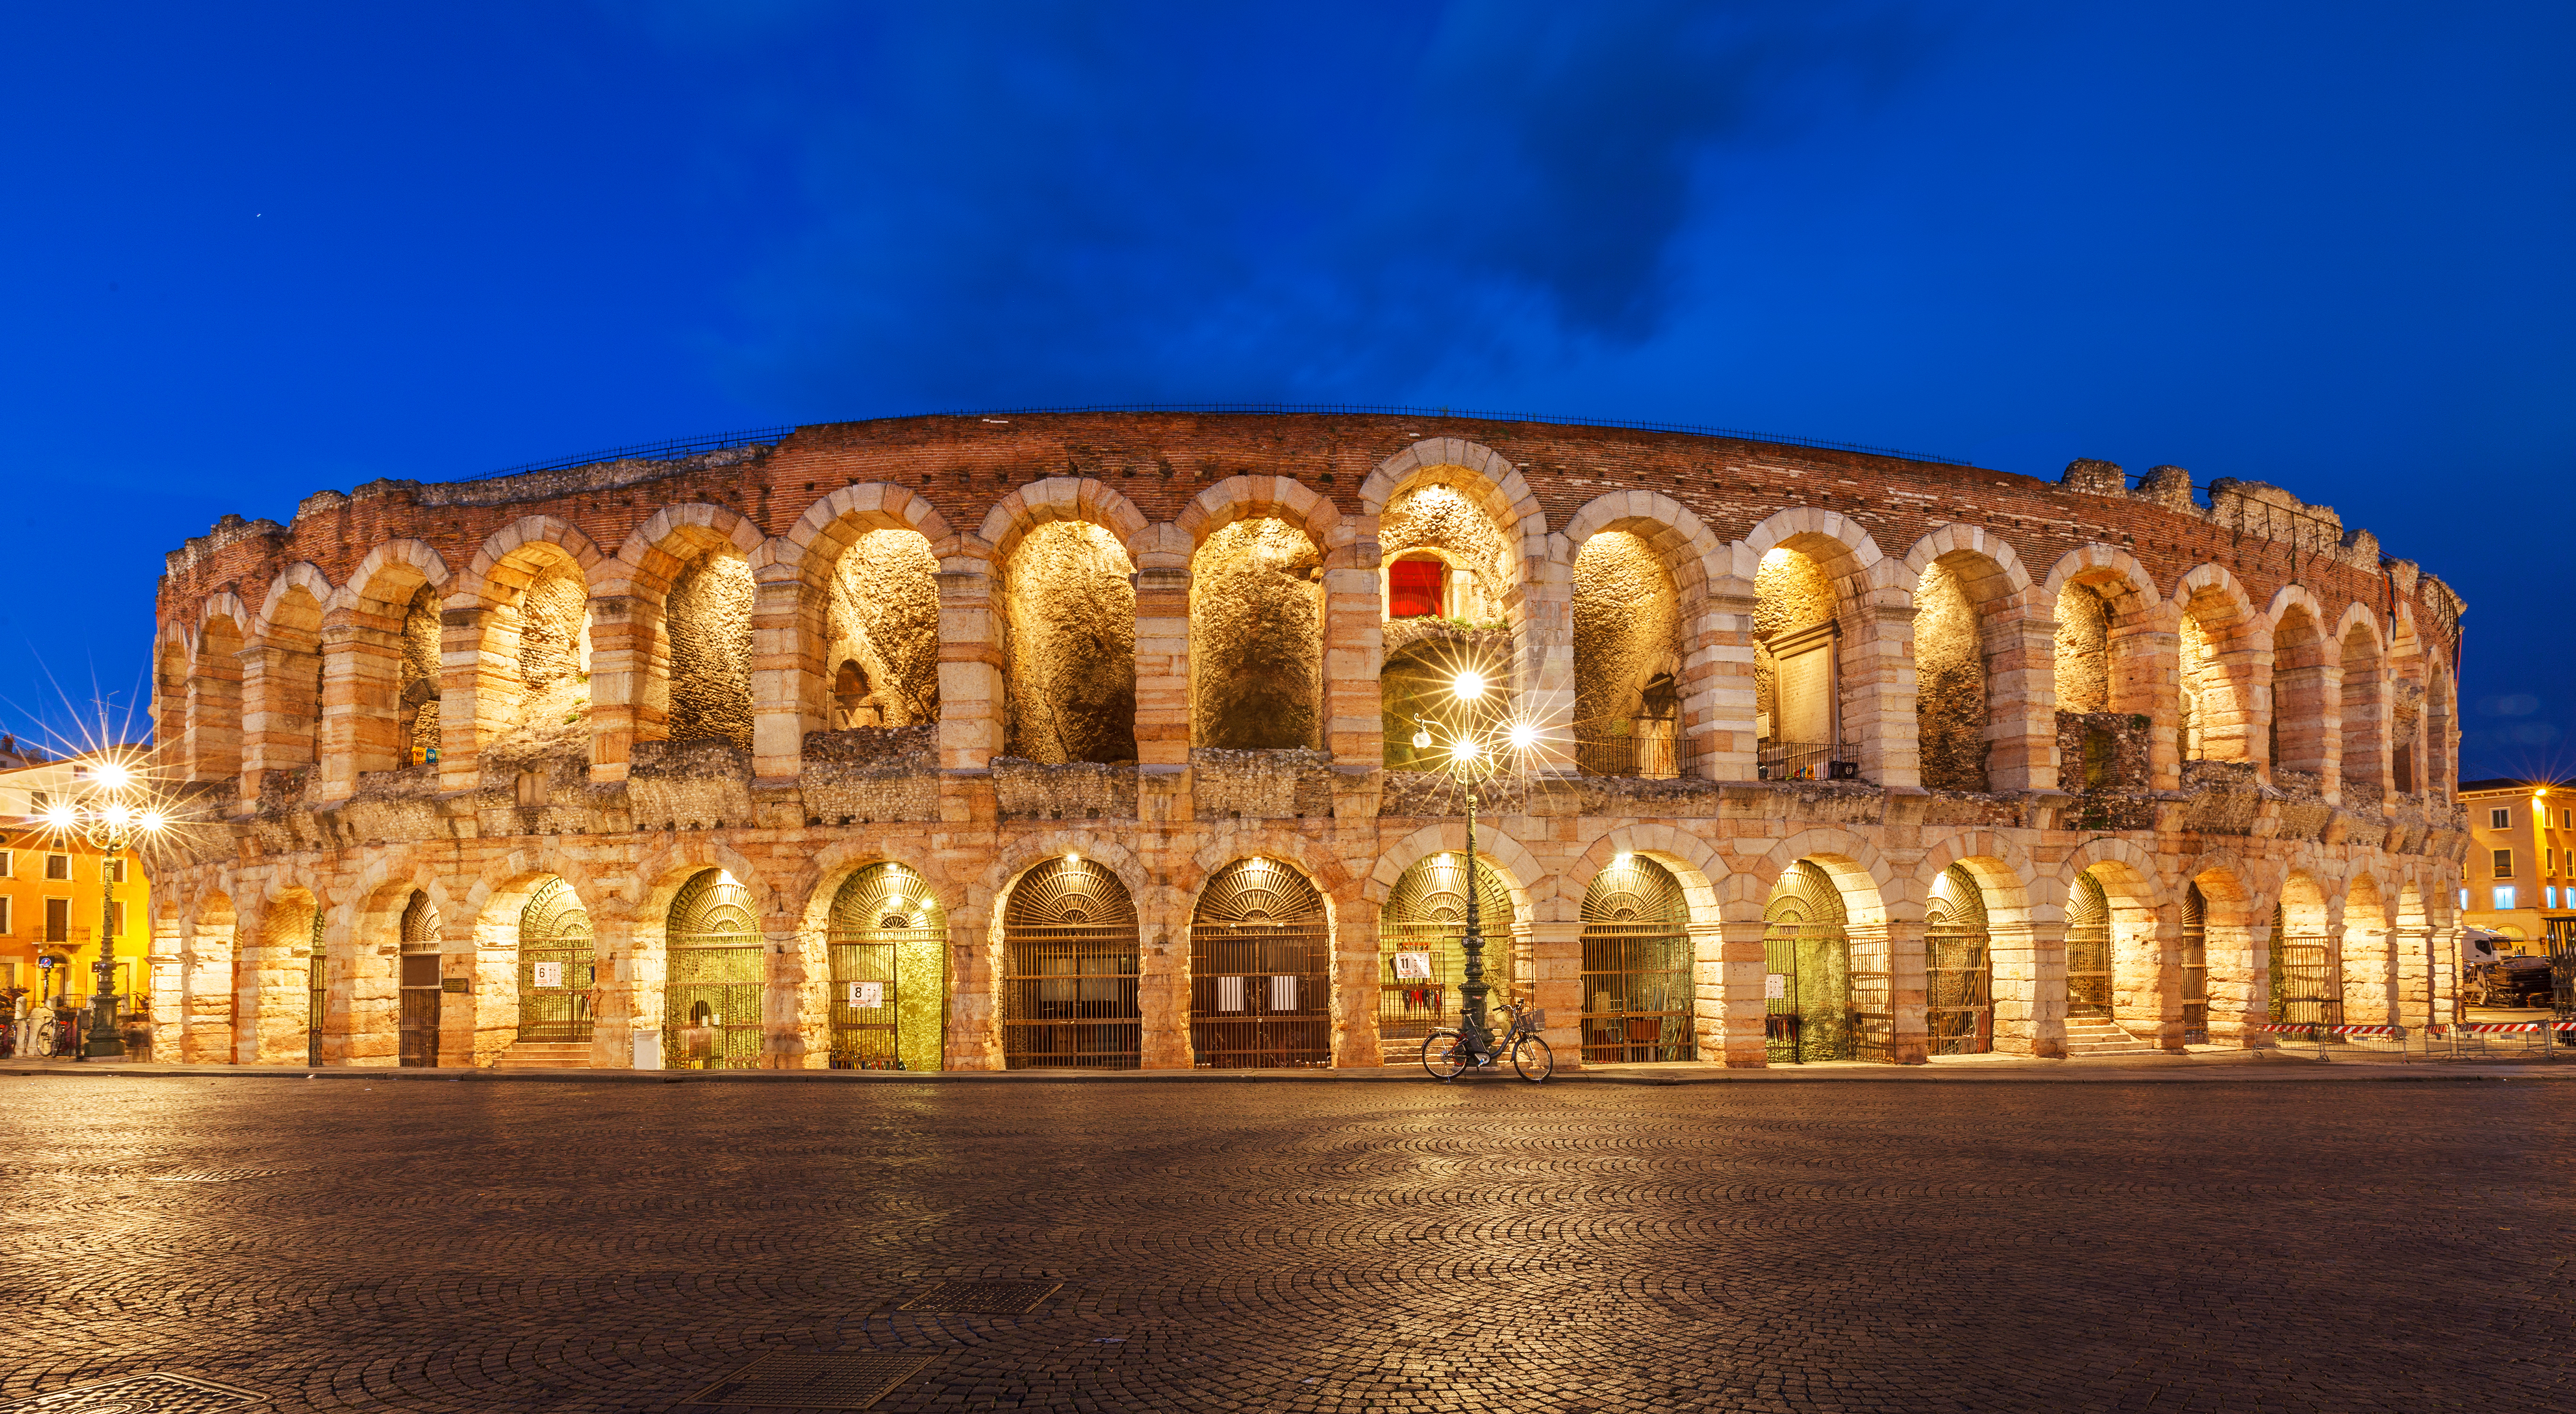 Immagine che raffigura Serata all'arena di Verona